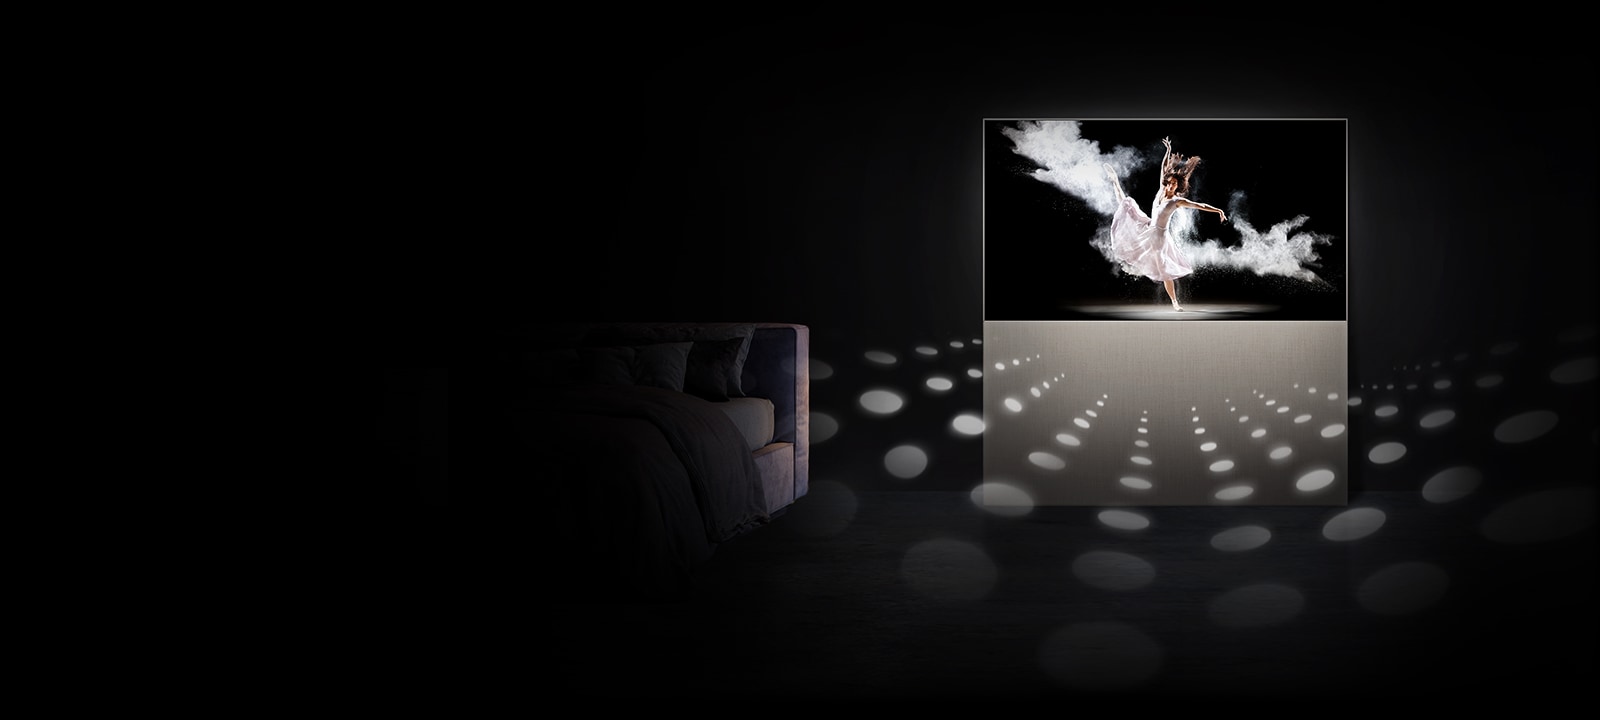 LG EASEL en mode plein écran avec une ballerine à l’écran. Des cercles représentant des notes sonores émises par le téléviseur montrent à quel point le son est suffisamment puissant pour remplir la pièce.